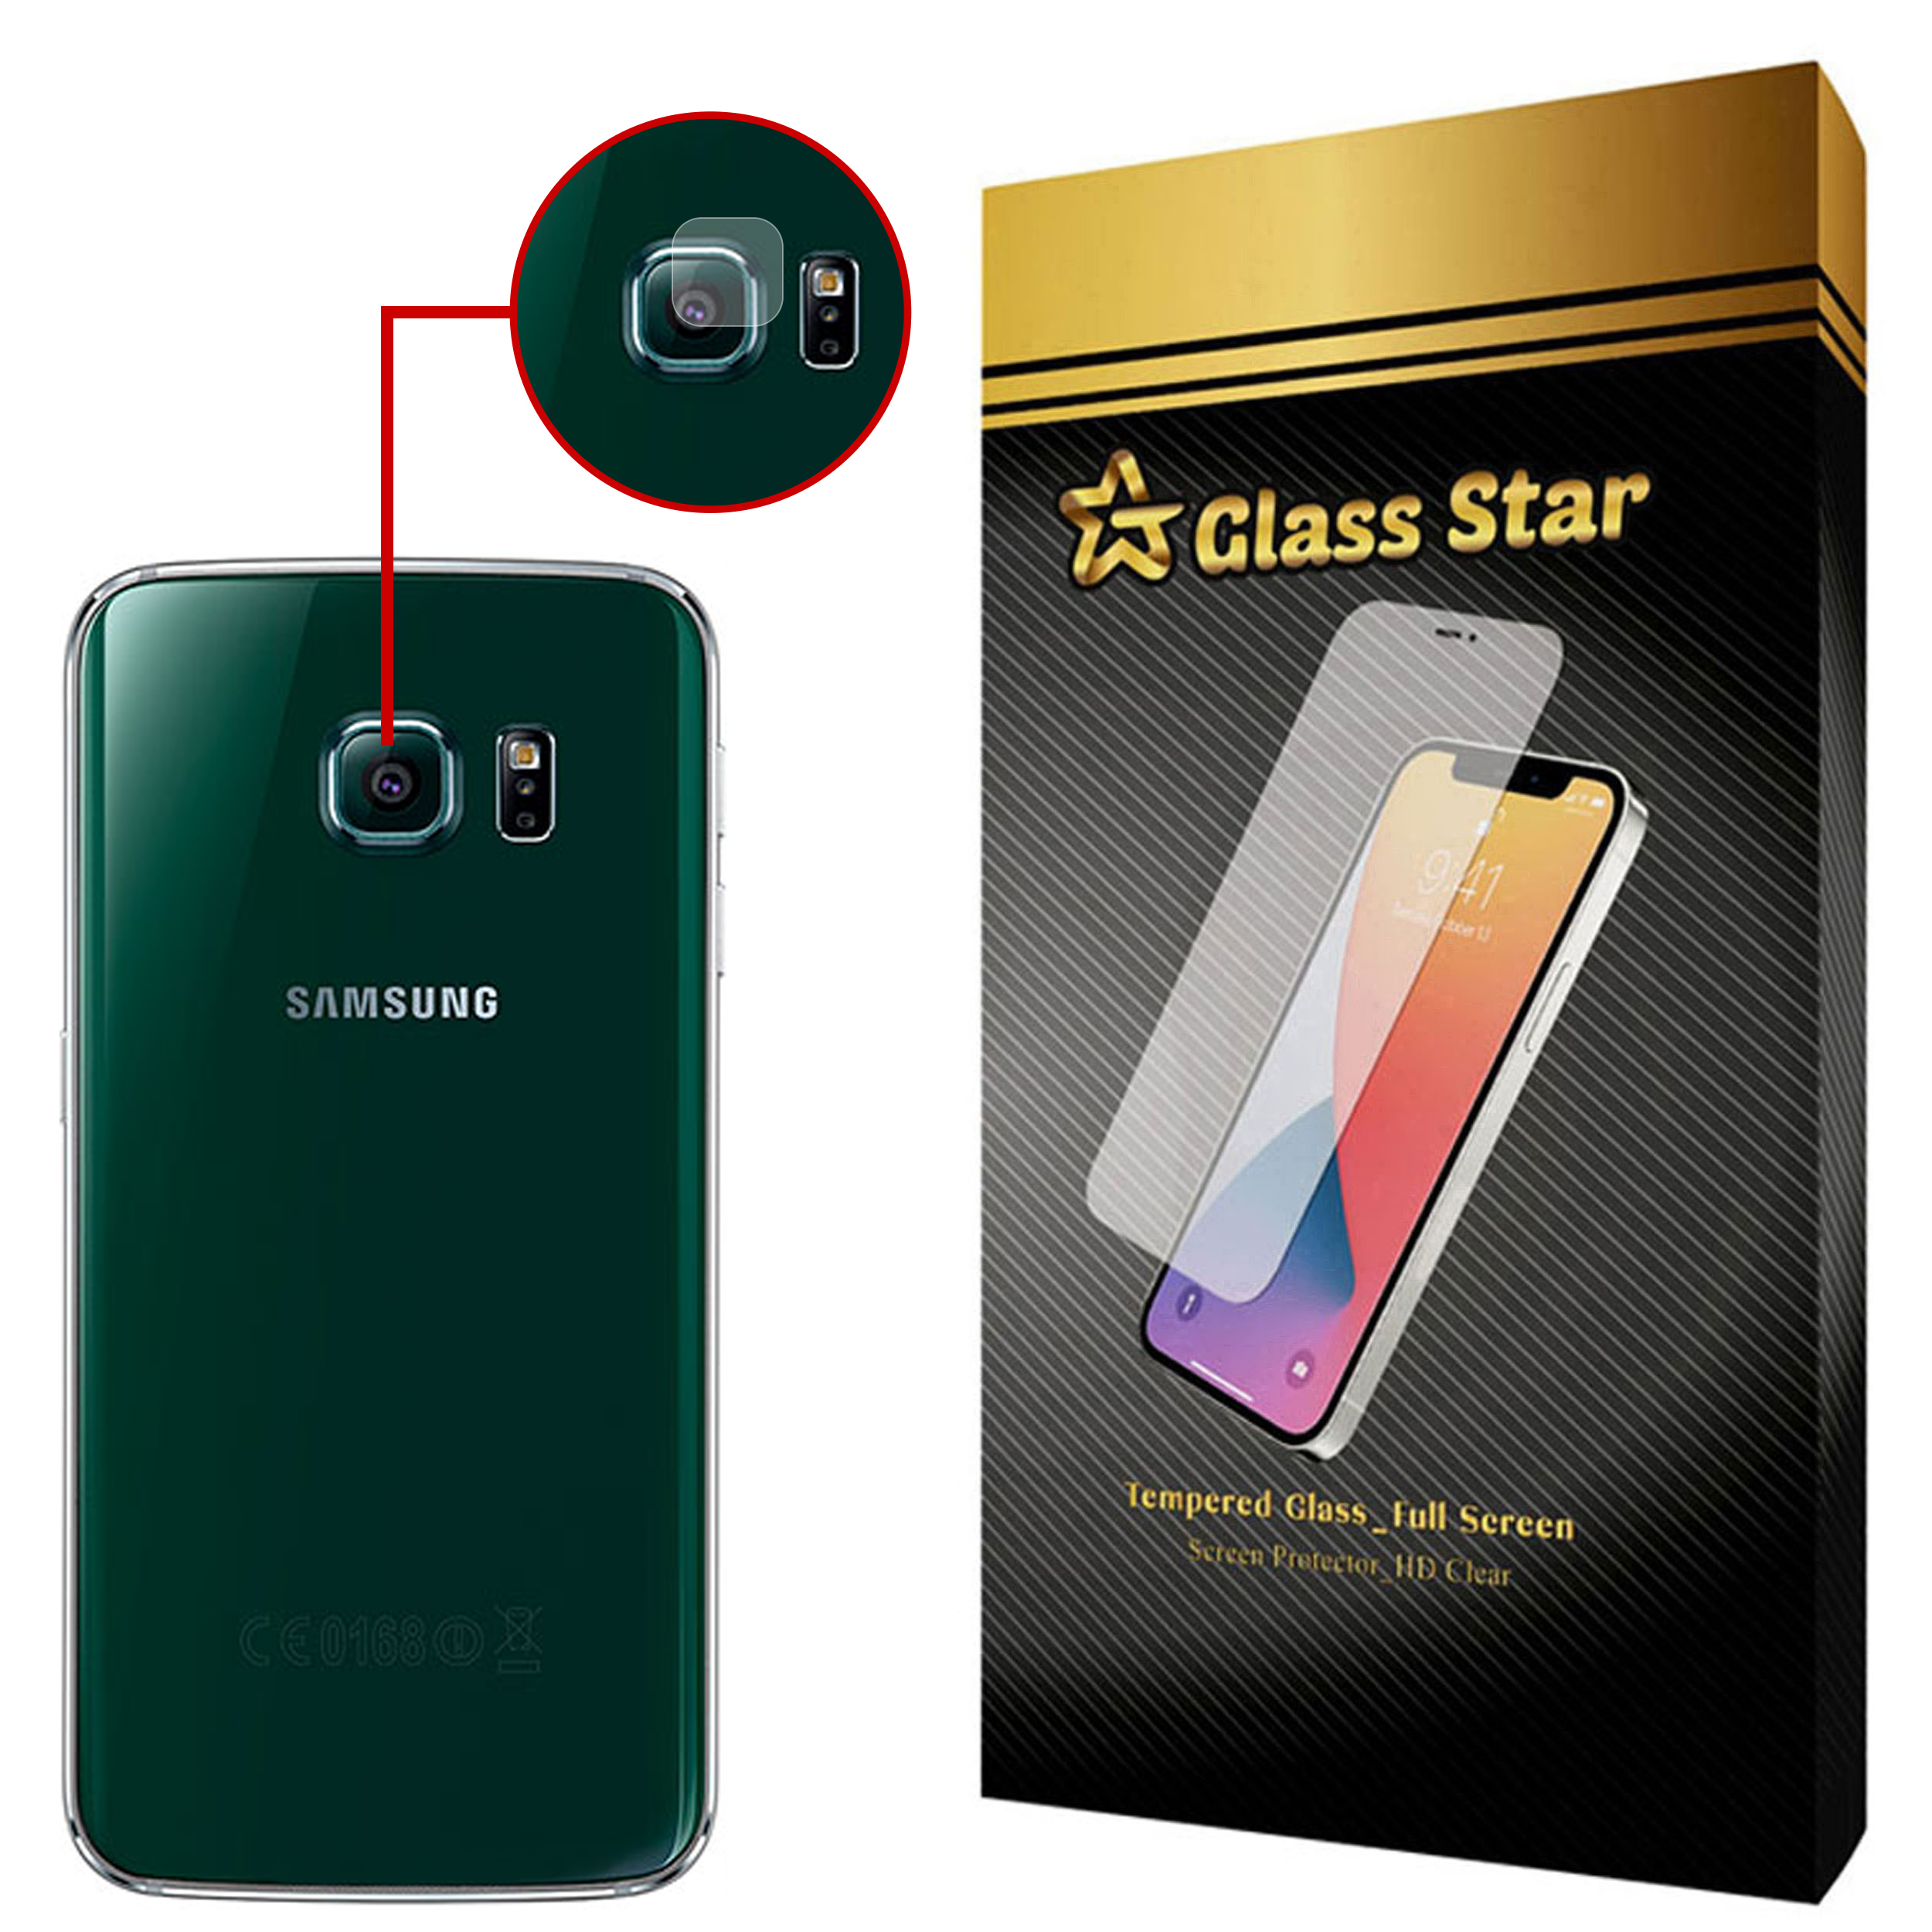 محافظ لنز دوربین گلس استار مدل PLX مناسب برای گوشی موبایل سامسونگ Galaxy S6 Edge